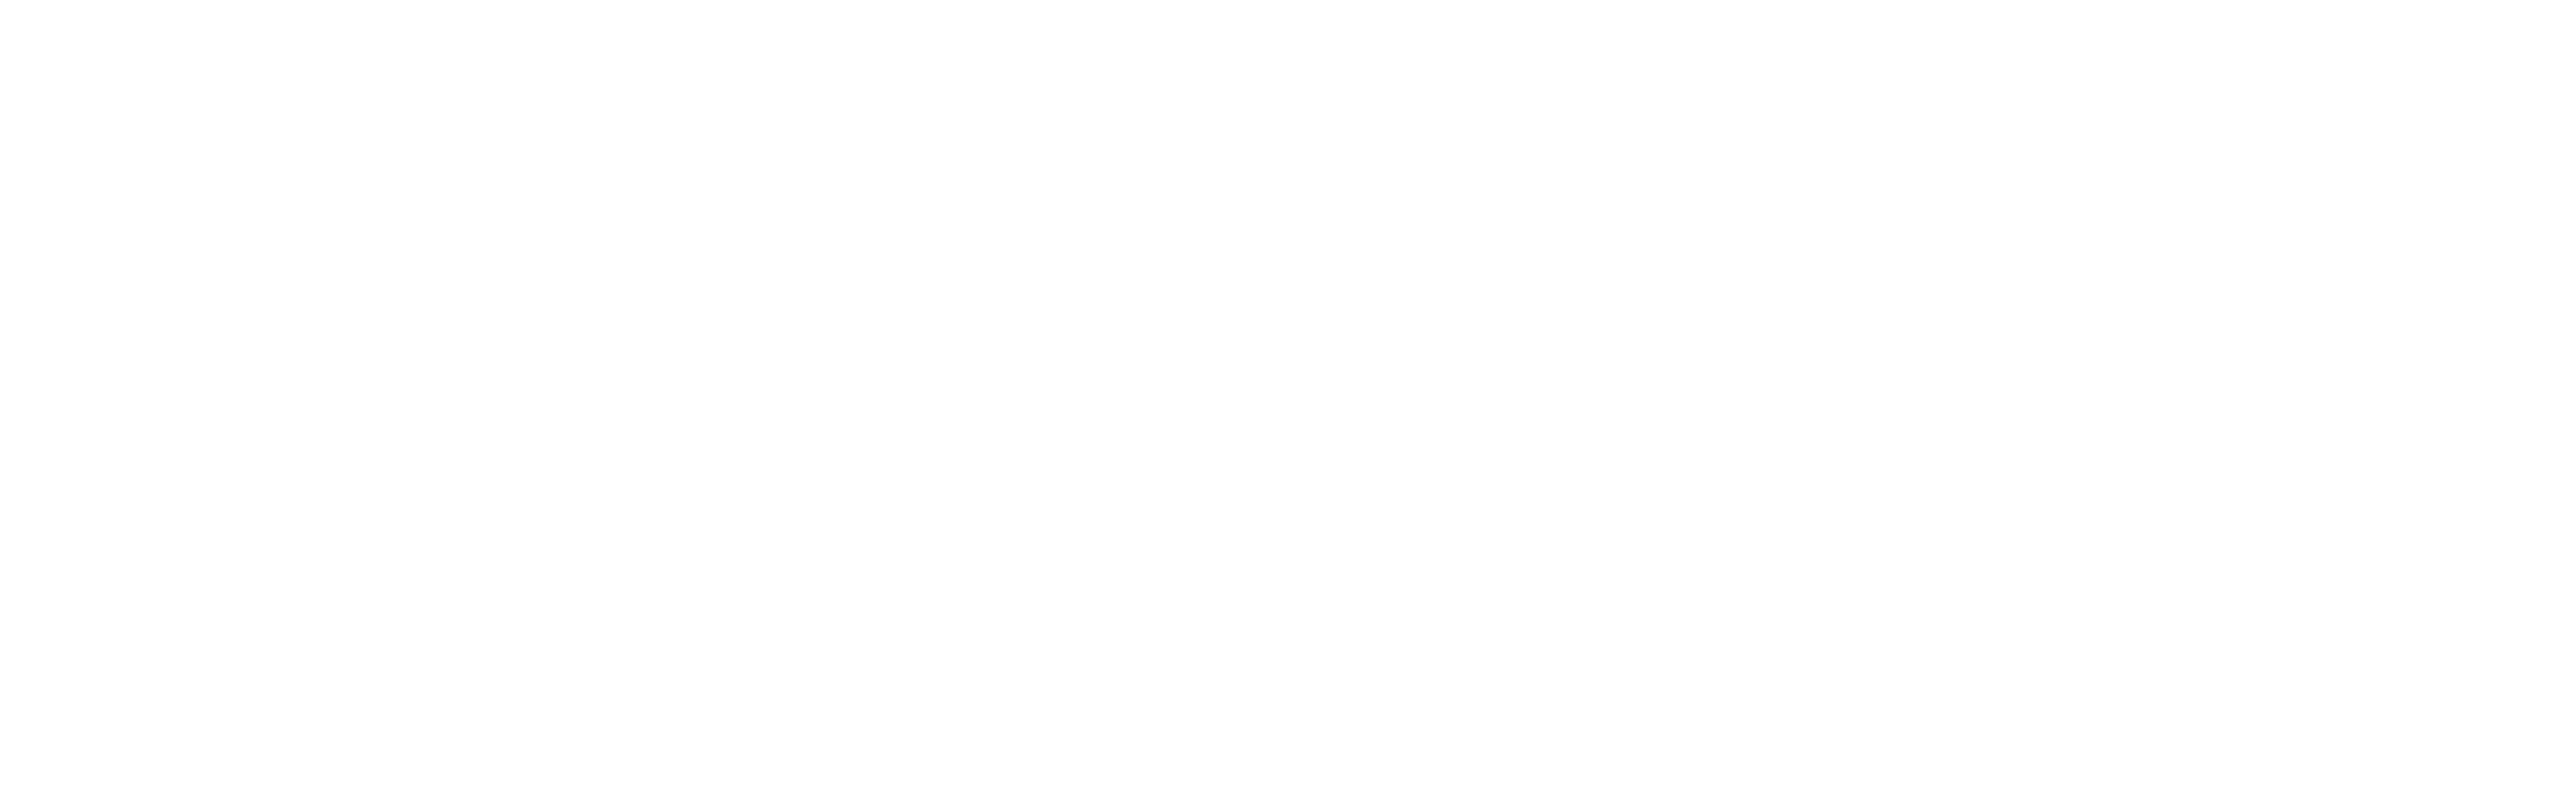 Treyarch_logo.png